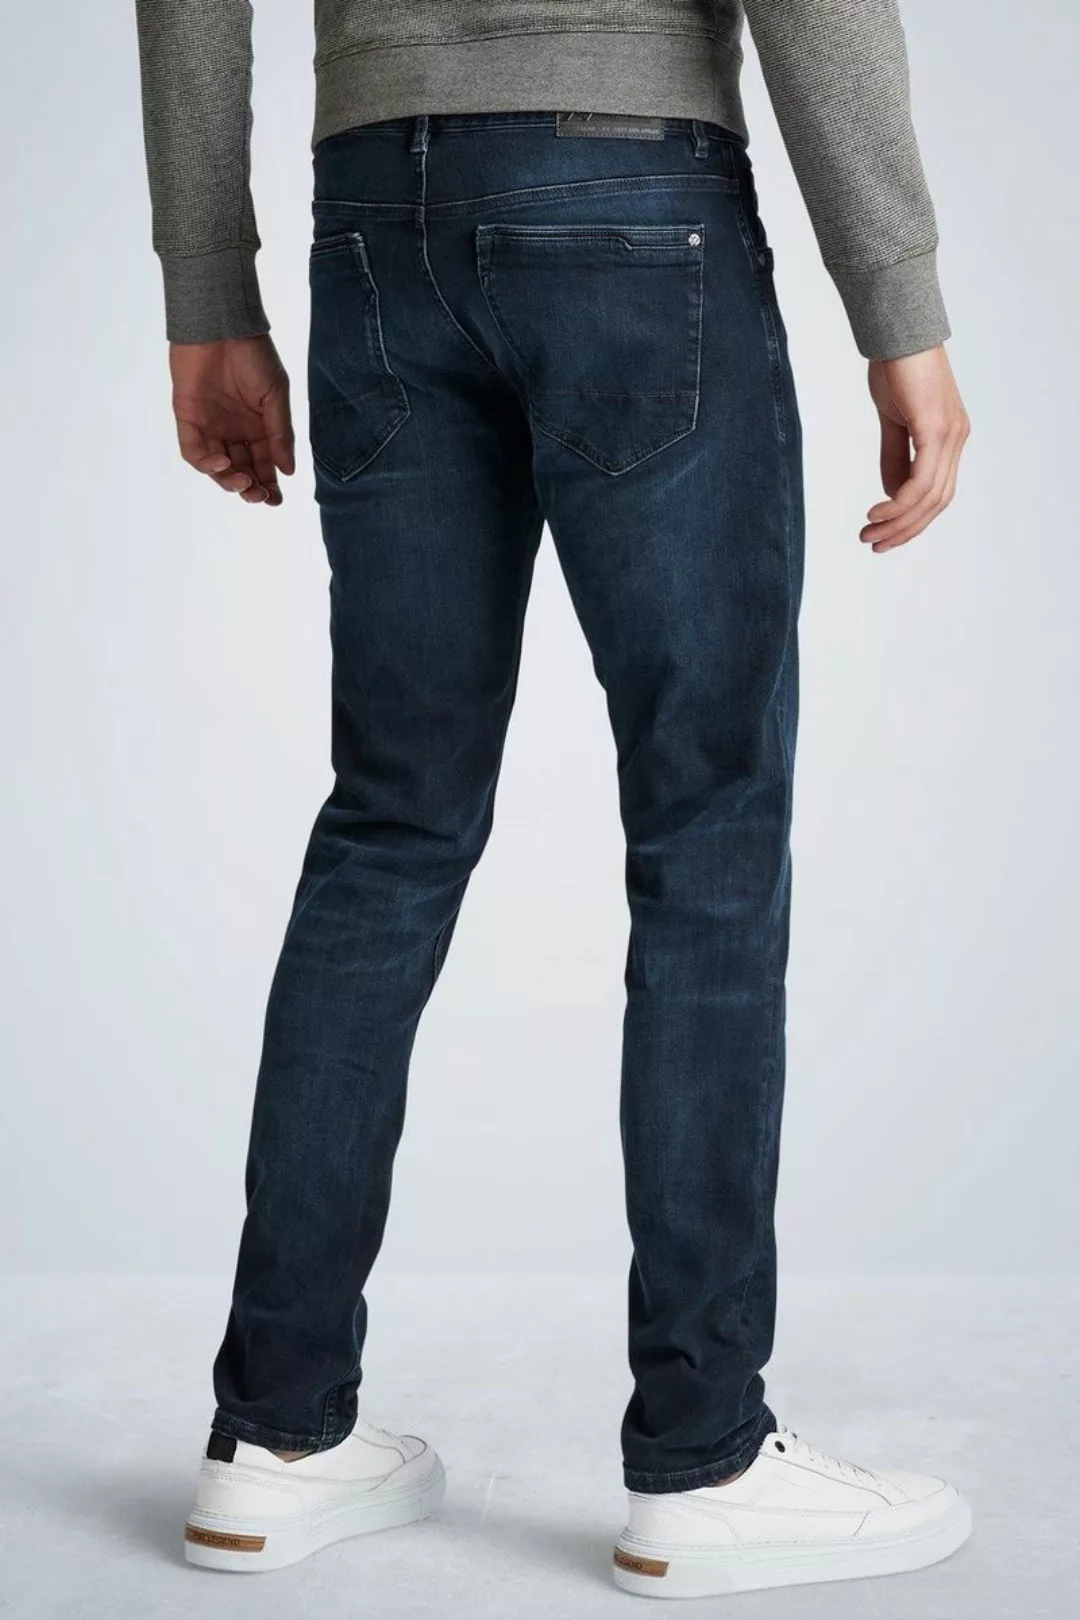 PME Legend XV Jeans Blue Black PTR150 - Größe W 31 - L 30 günstig online kaufen